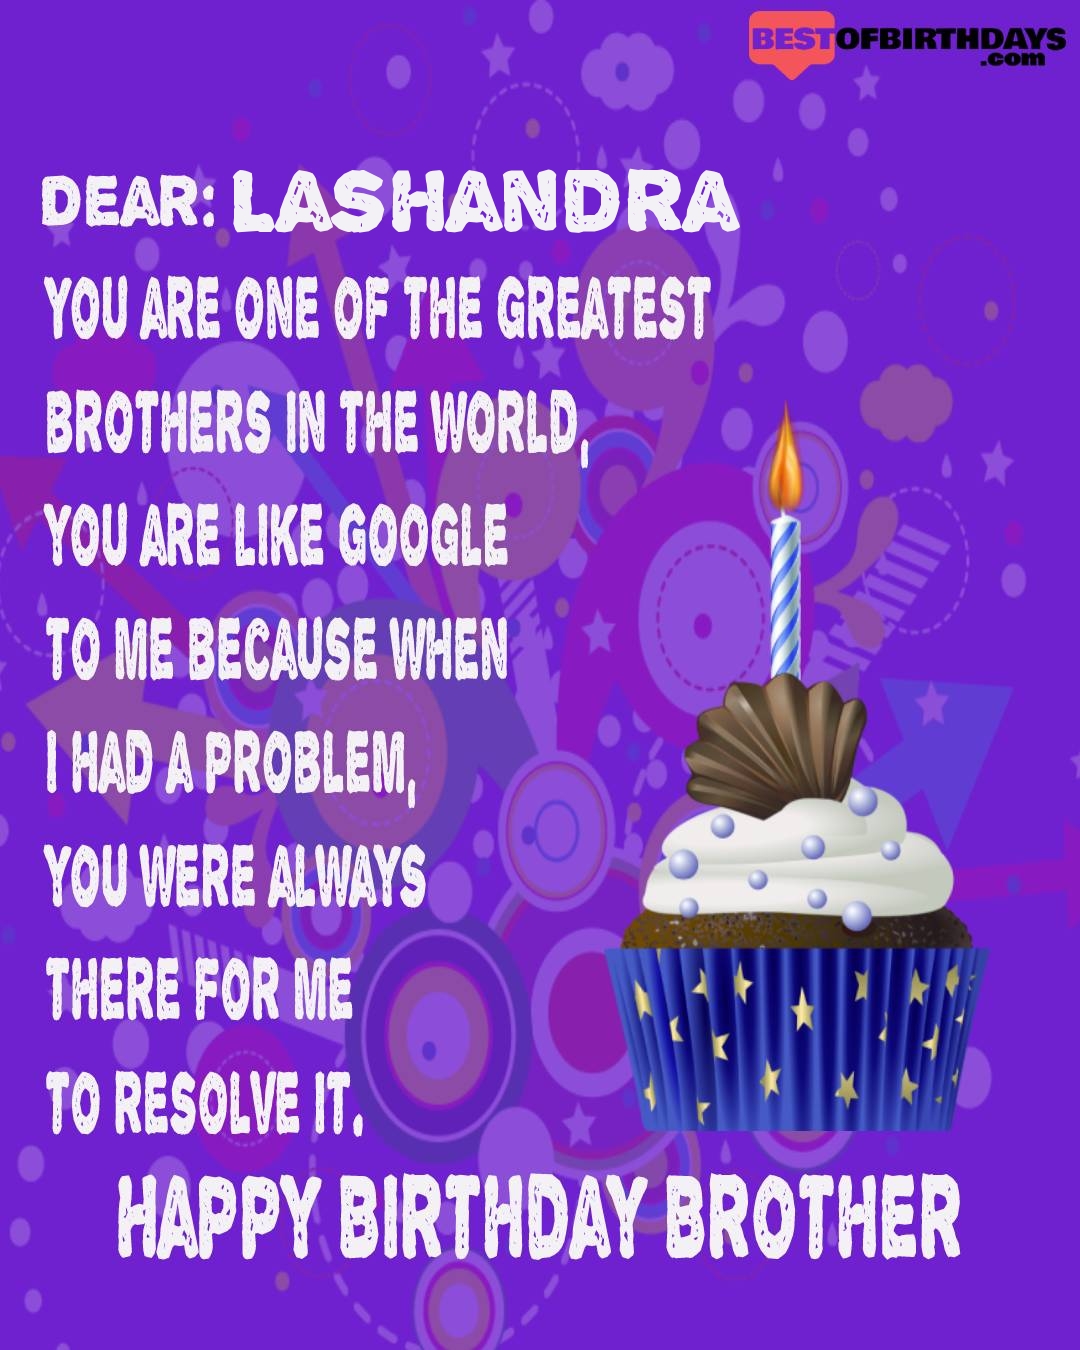 Happy birthday lashandra bhai brother bro